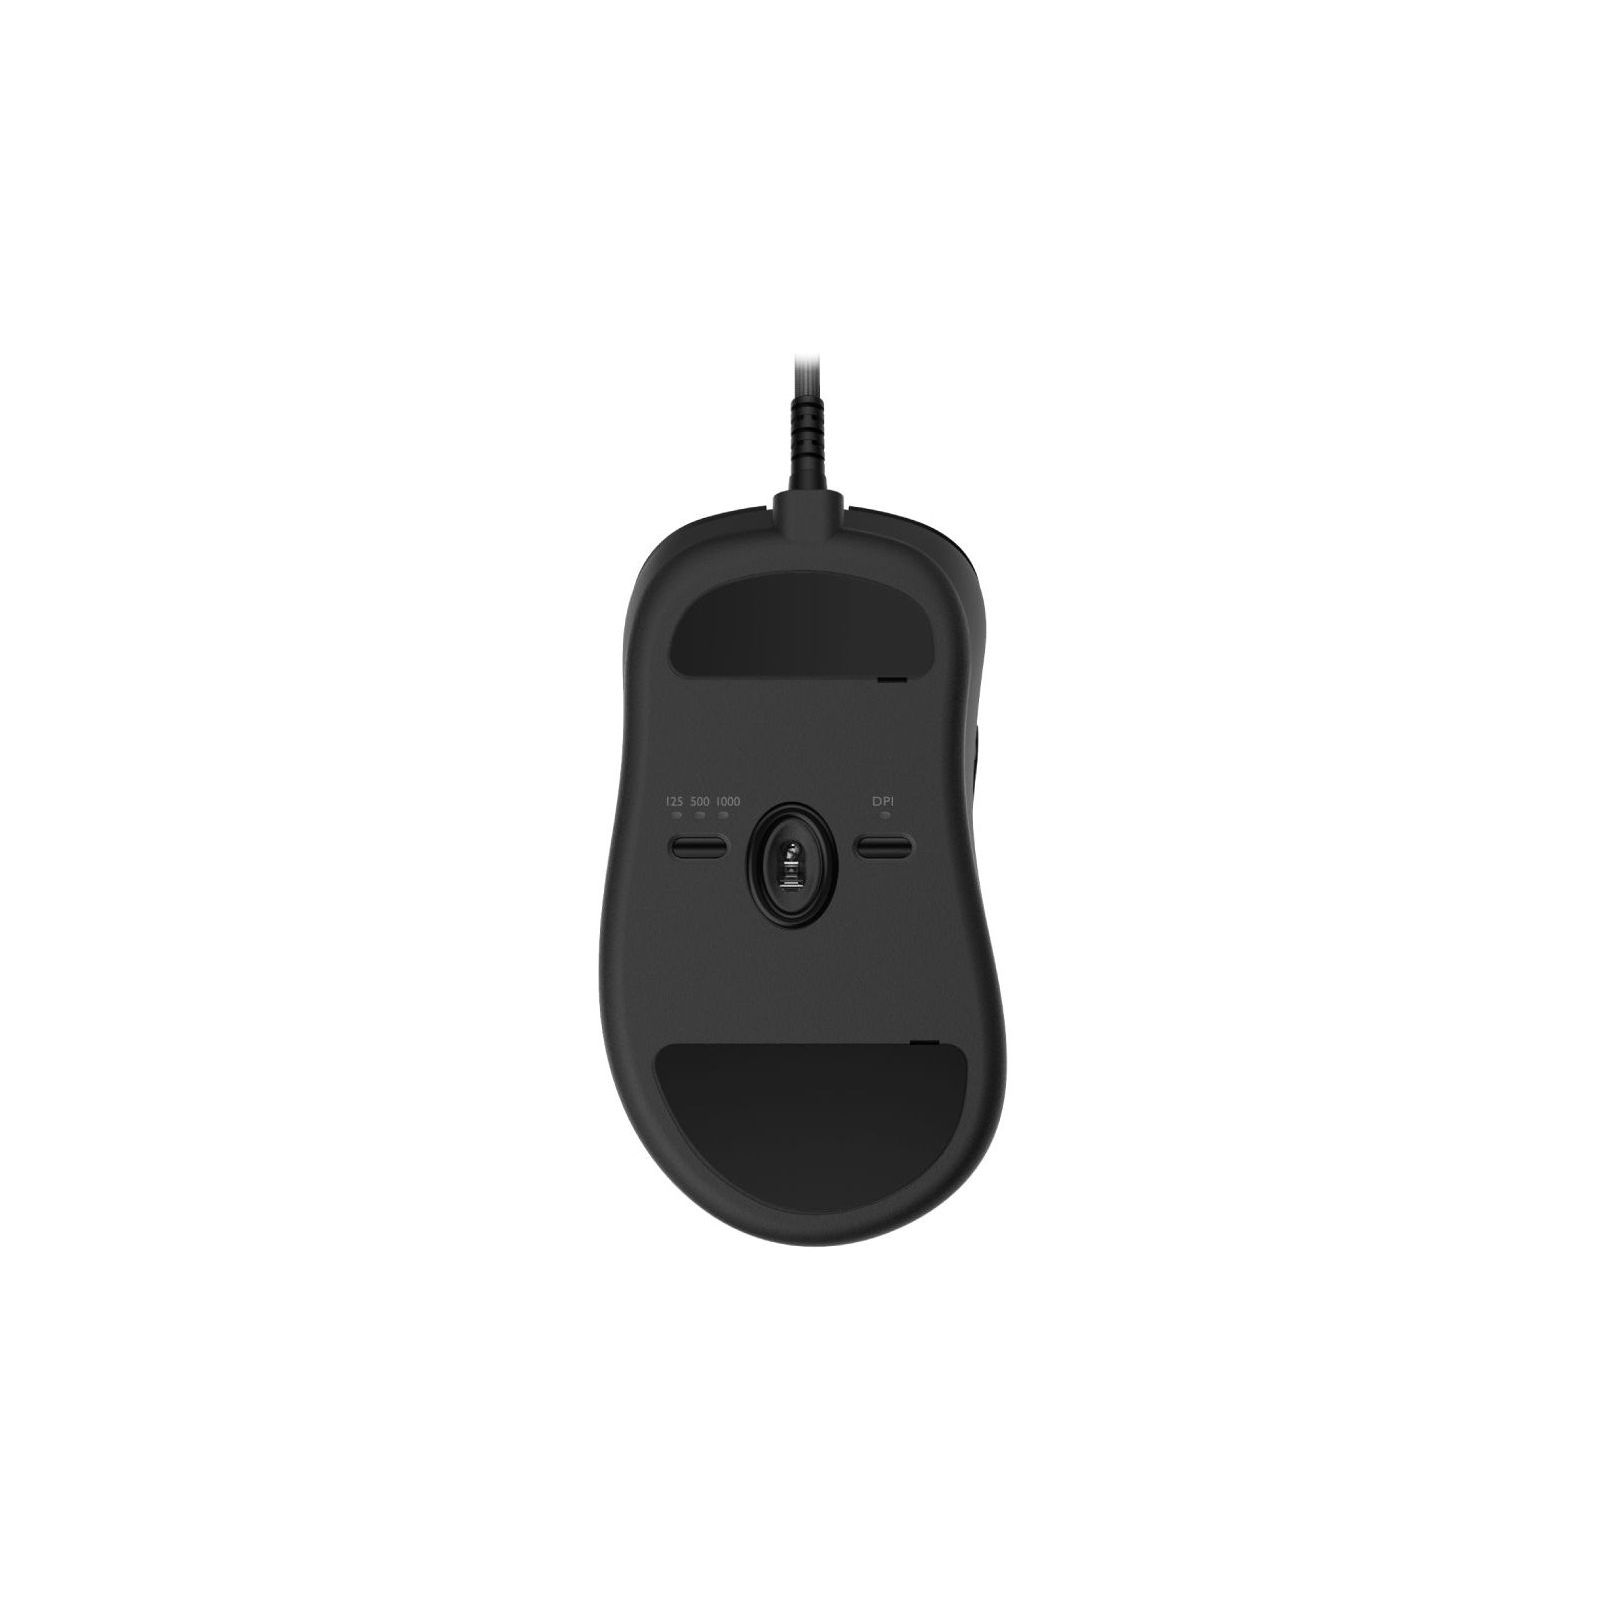 Мишка Zowie EC2-C USB Black (9H.N3ABA.A2E) зображення 3